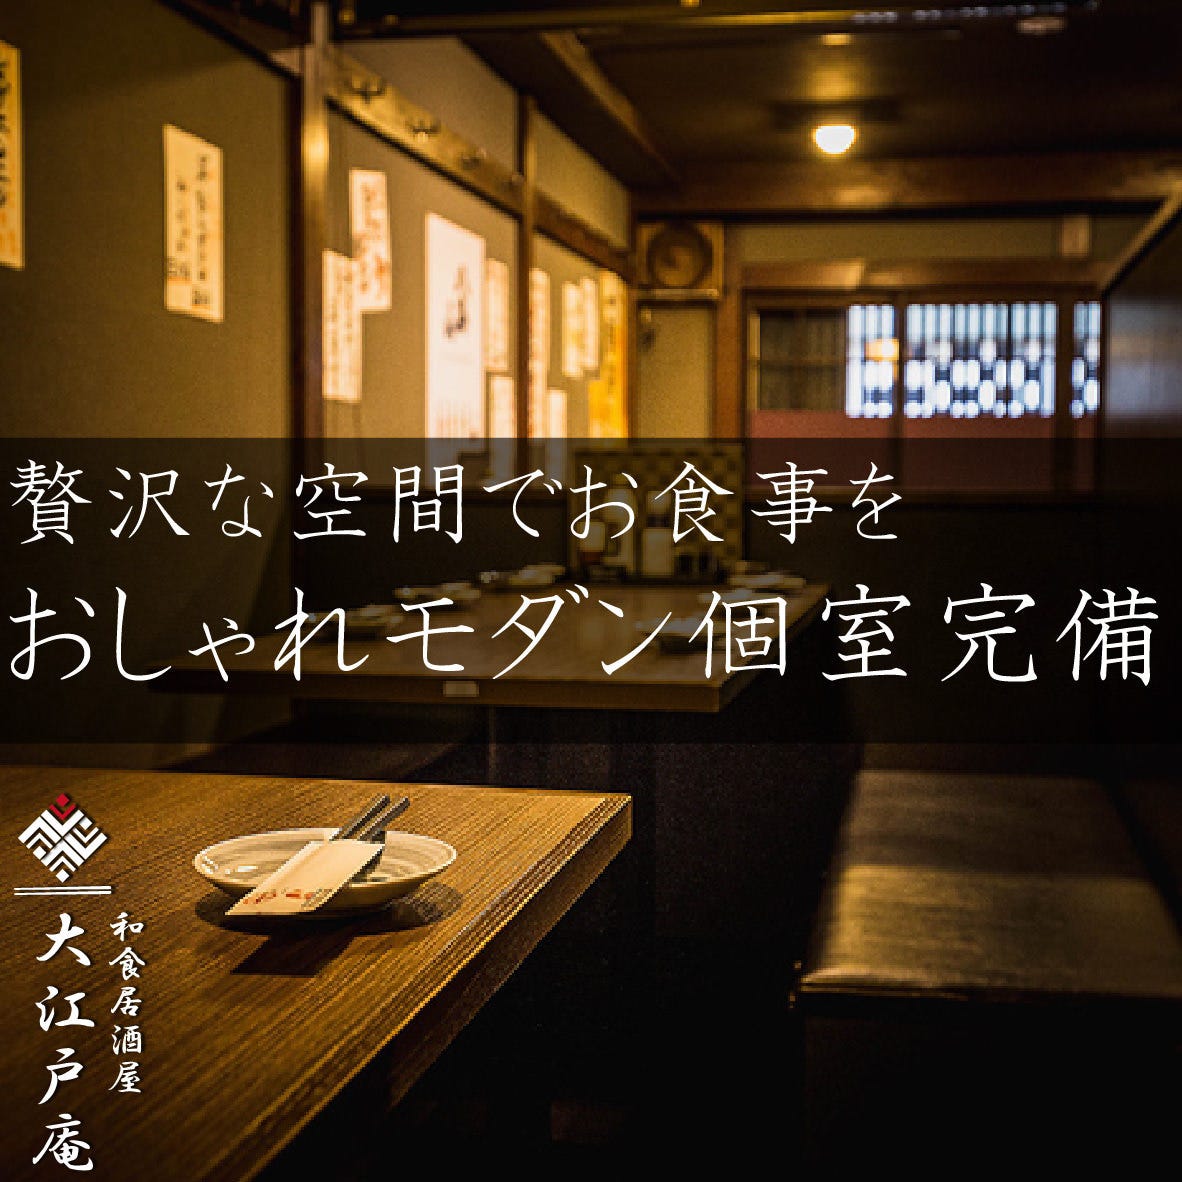 個室居酒屋 つくらや Tukuraya 新橋店 新橋 和食 居酒屋 Goo地図